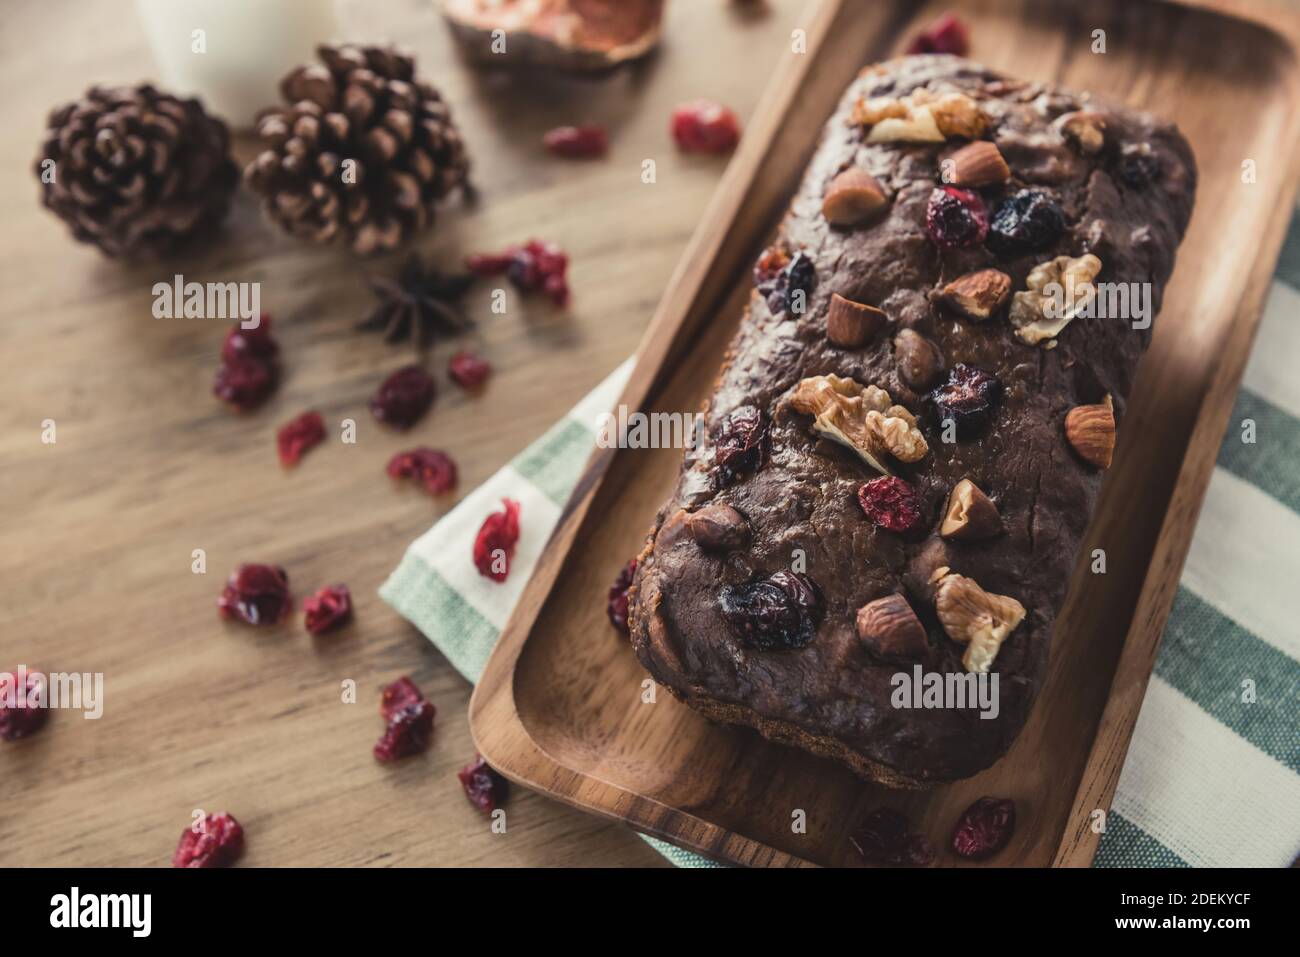 Torta fresca fatta in casa di frutta secca al cioccolato misto con nocciole su un piastra in legno e panno da cucina nella panetteria Foto Stock